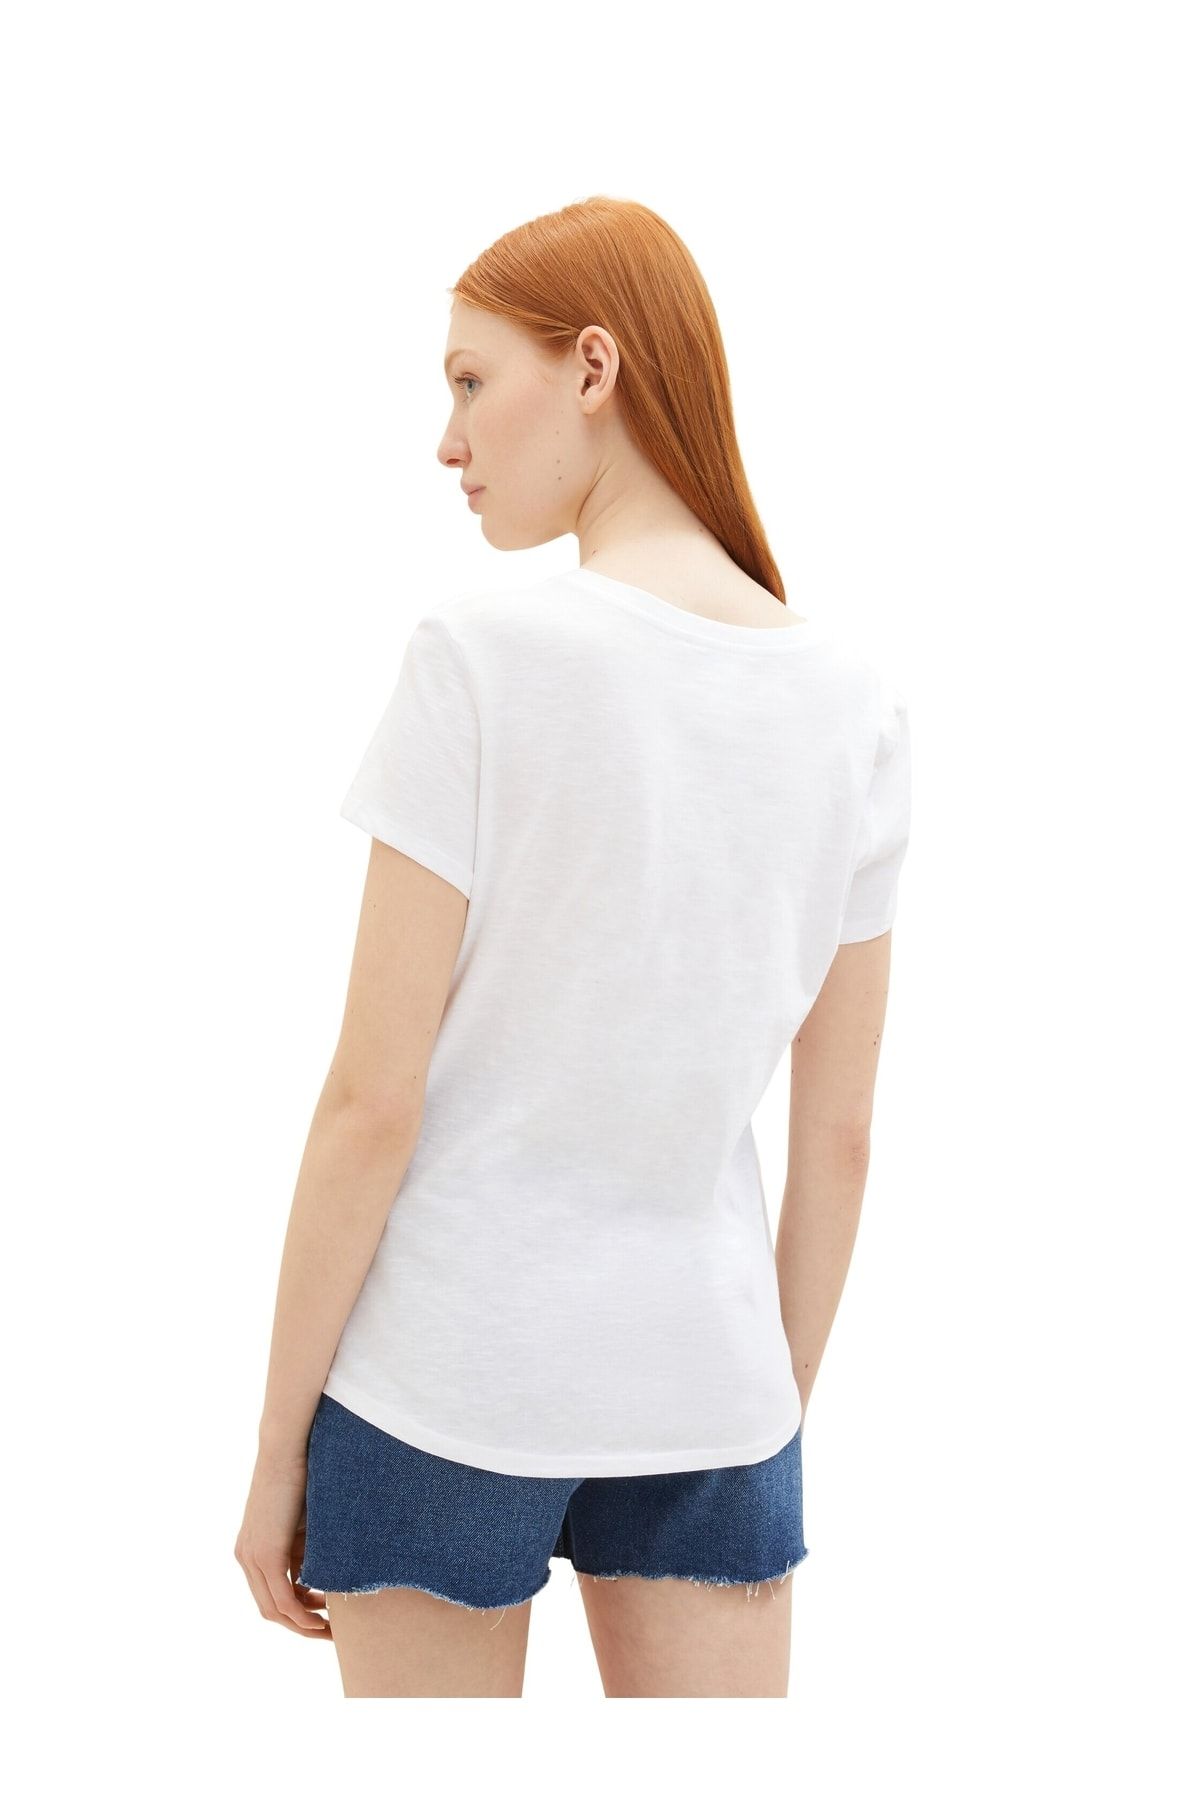 Tom Tailor Denim T-Shirt - White - Regular fit - Trendyol